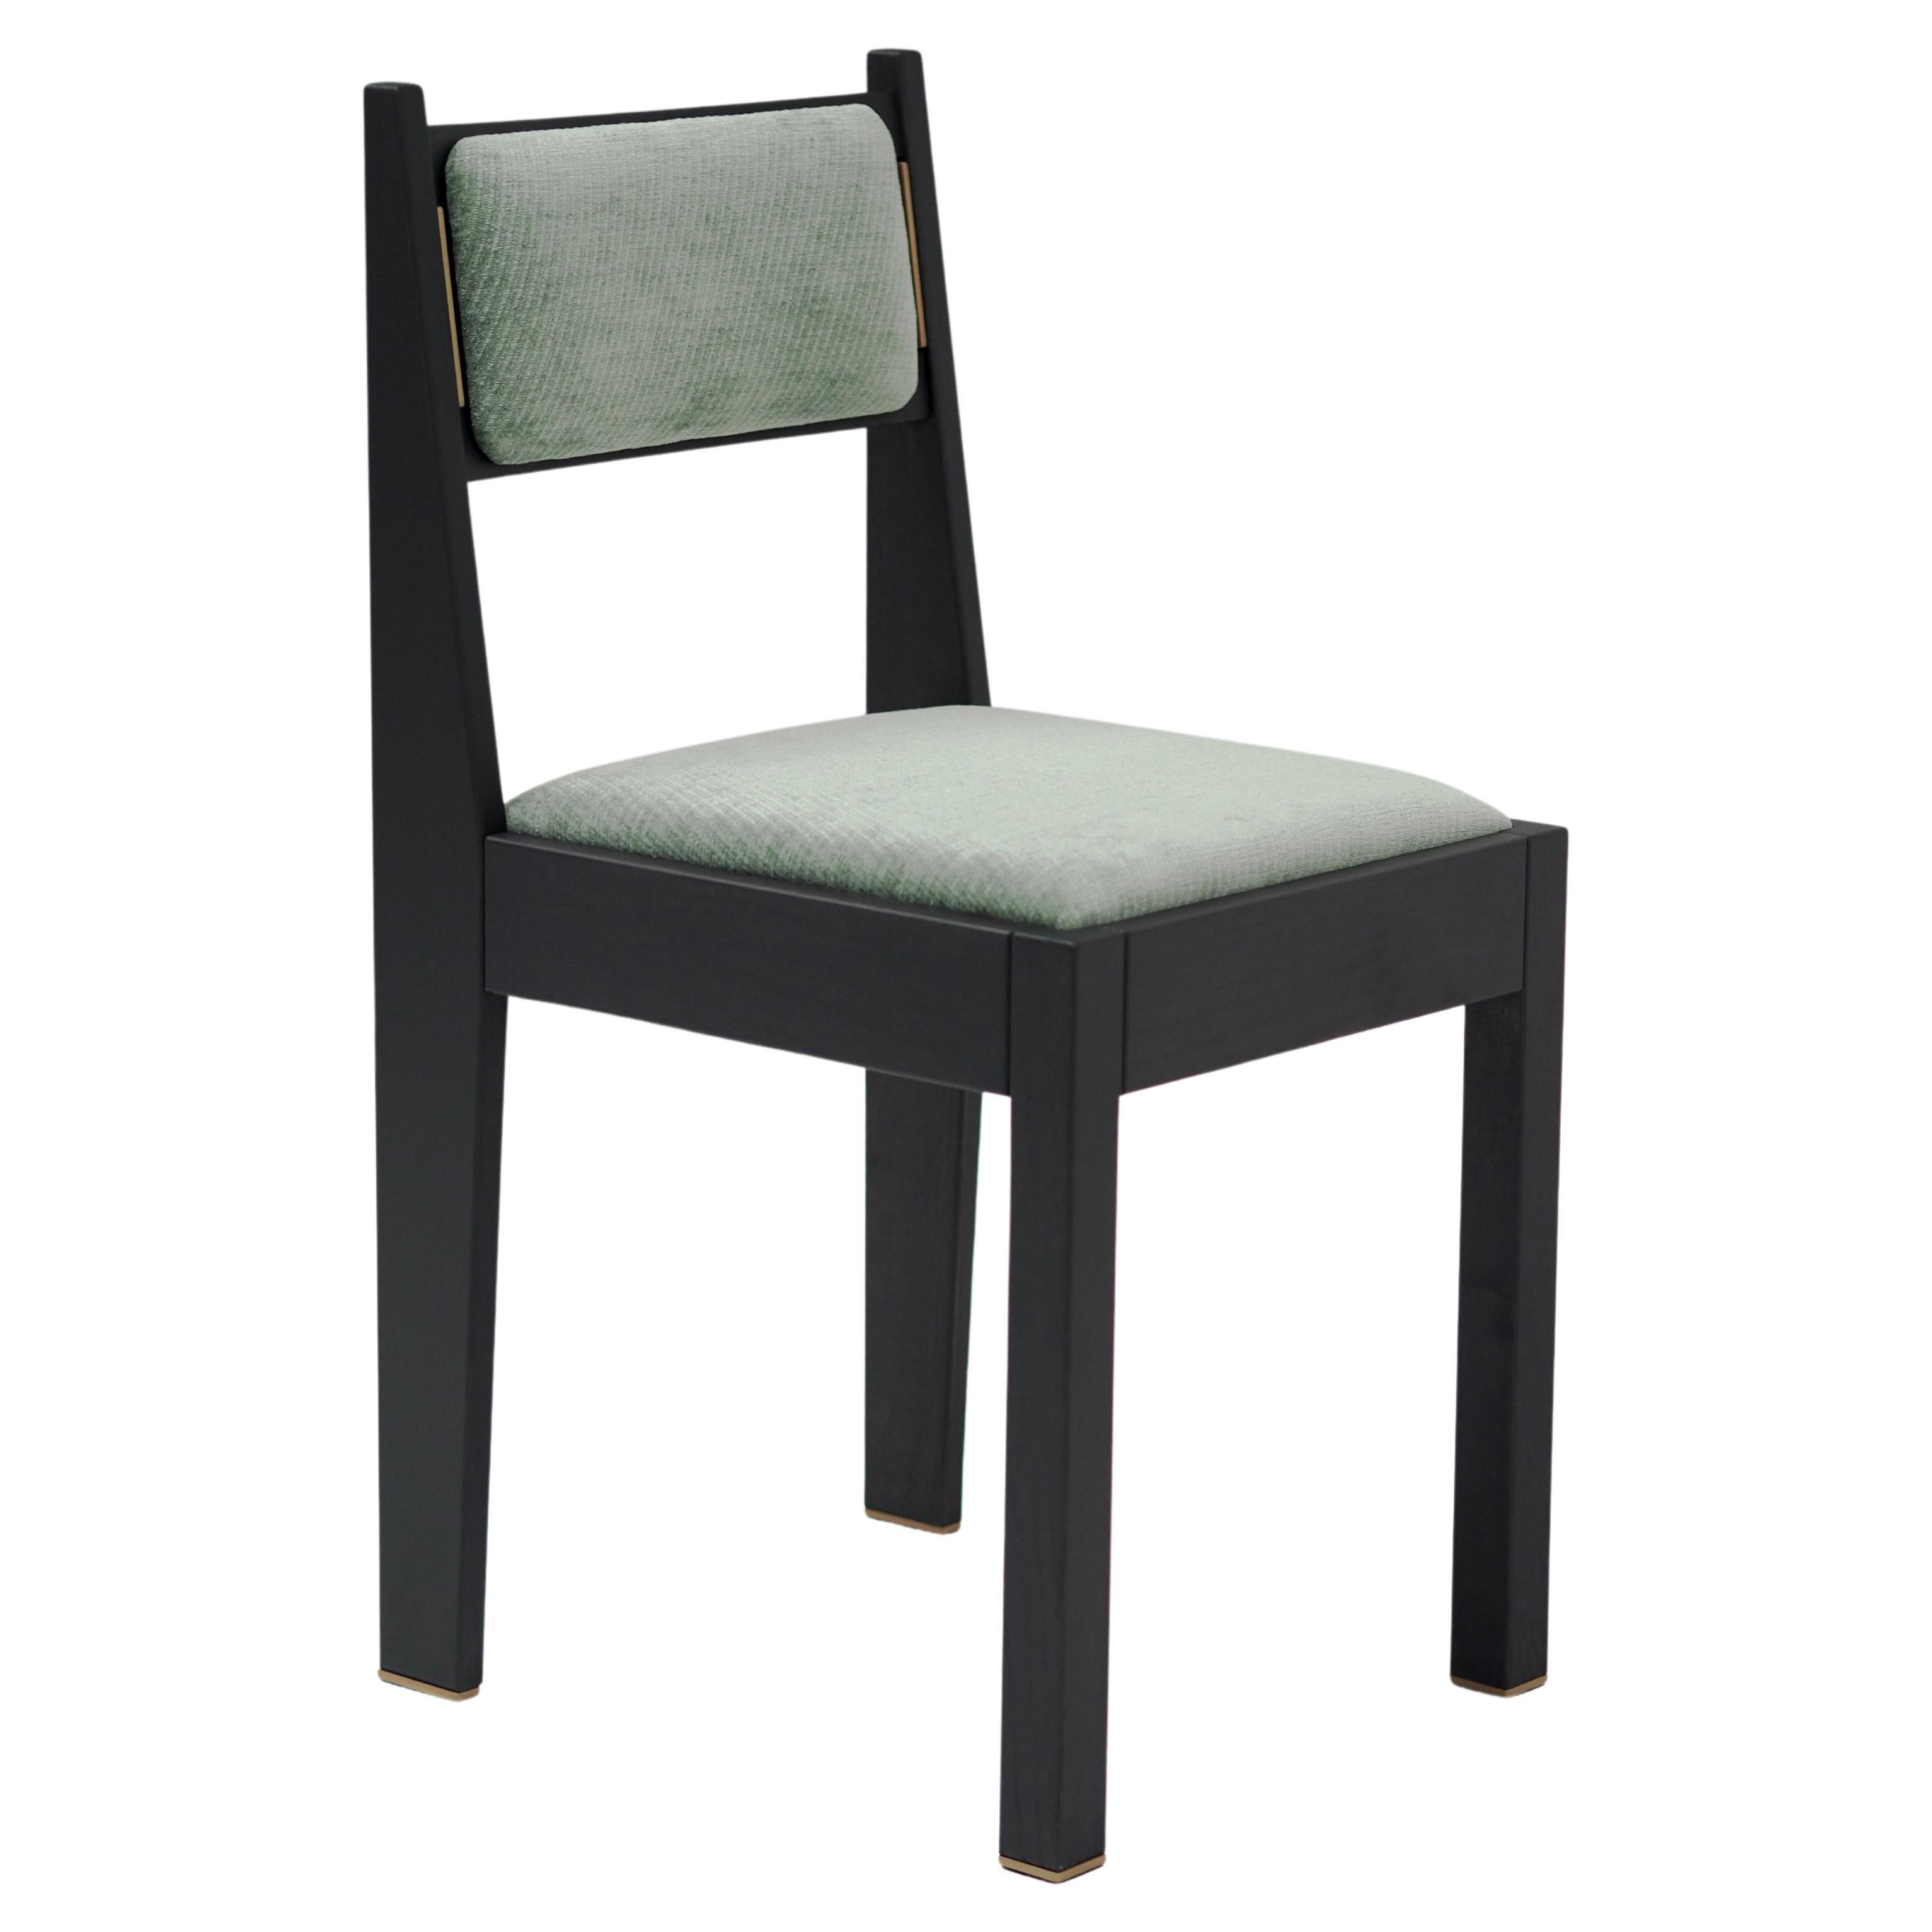 Contemporary Art Deco Chair, schwarzes Eschenholz, grüne Polsterung und Messingdetails